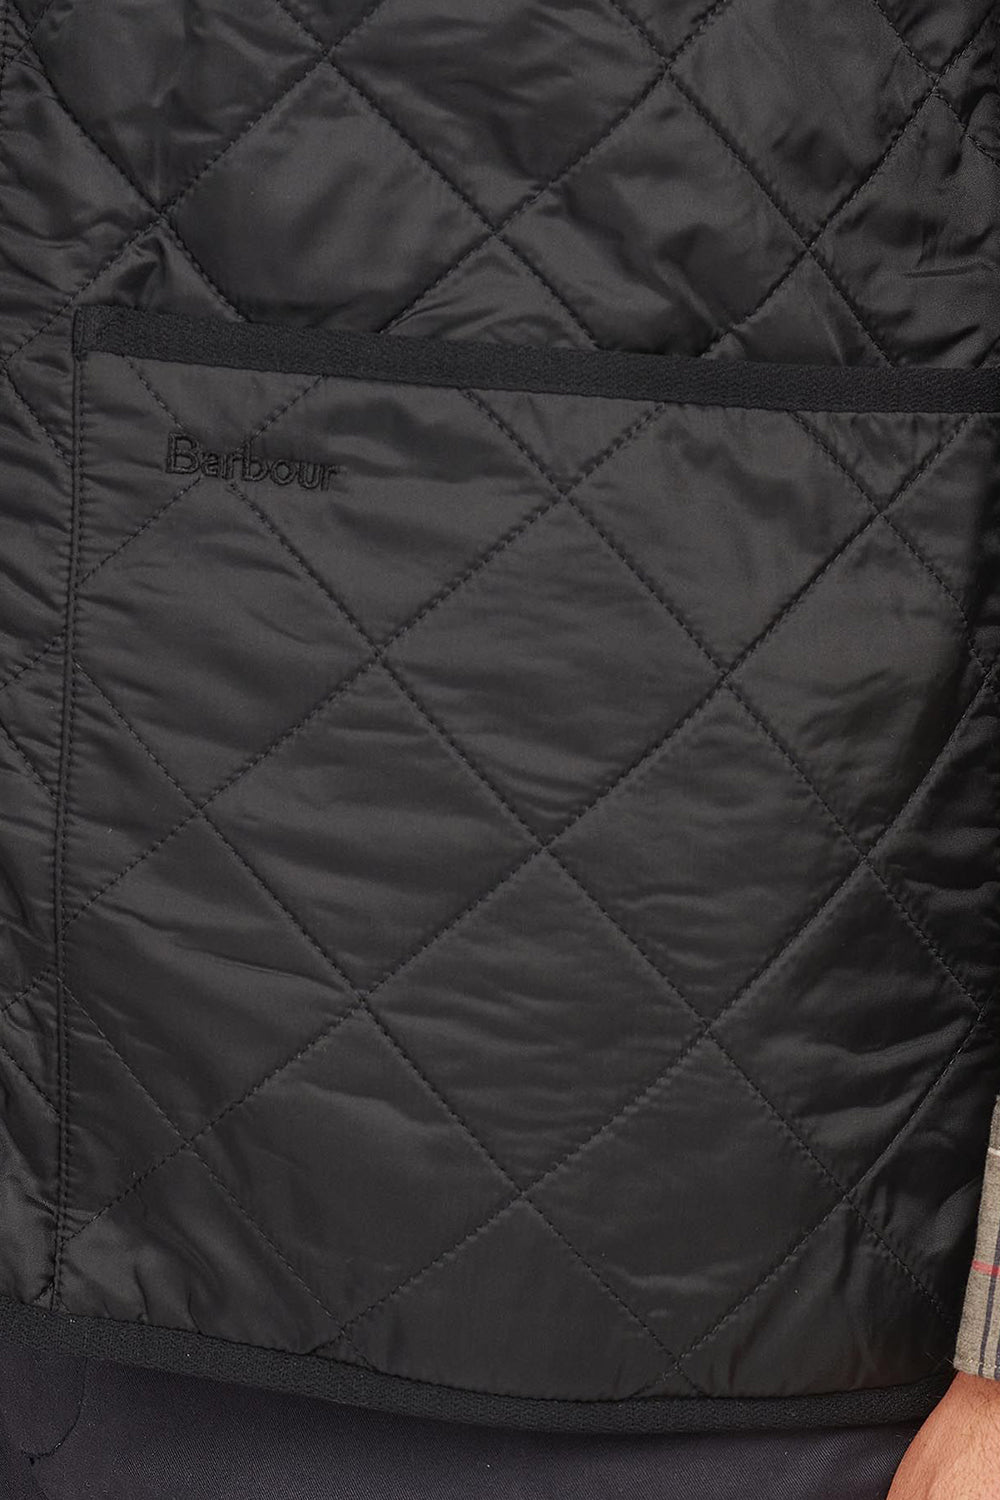 Barbour Polar Quilt Waistcoat Zip-In Liner (Black)